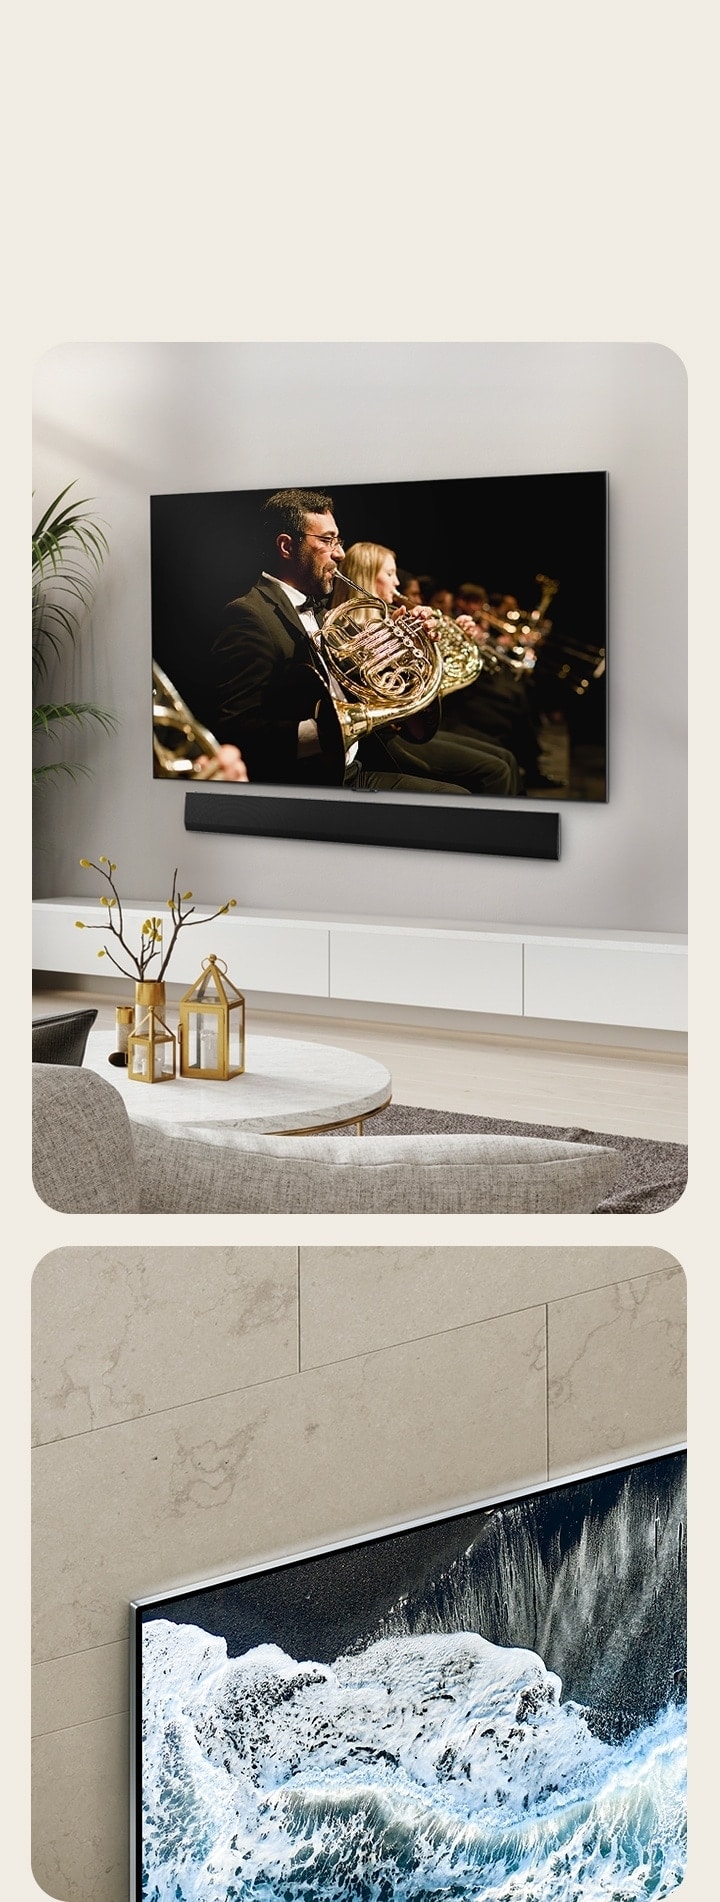 LG OLED TV, OLED G4 dentro de un ángulo de perspectiva contra una pared de mármol mostrando cómo se funde contra la pared.   LG OLED TV, OLED G4 y una barra de sonido LG en un espacio limpio y plano contra la pared con una actuación orquestal en pantalla. 